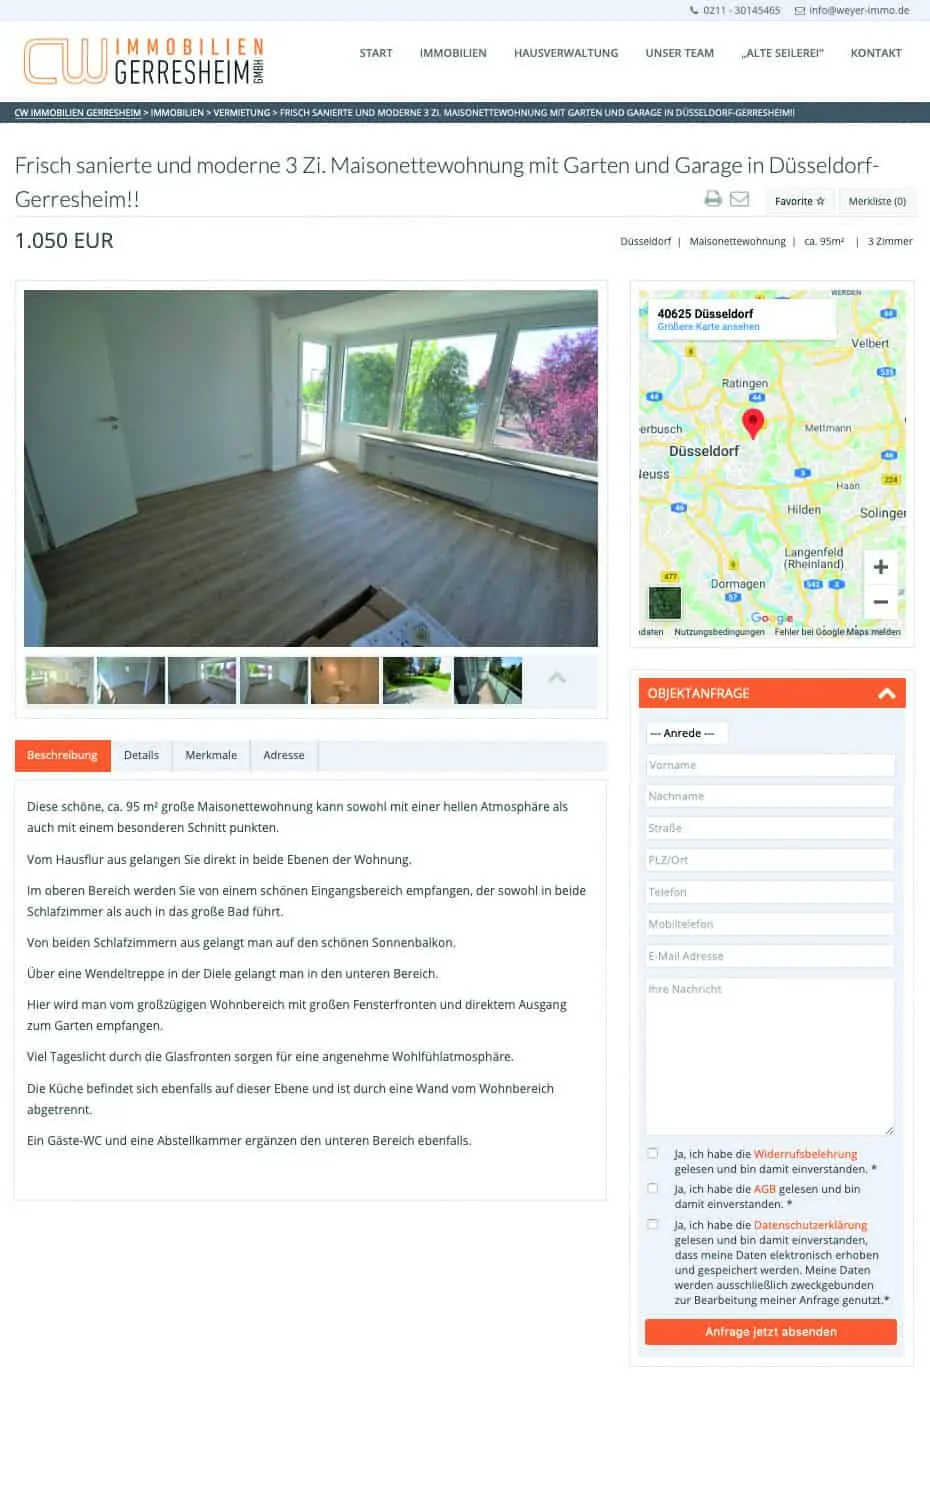 Relaunch Webseite Immobilienangebote für CW Immobilien Gerresheim von Kommercial Werbeagentur